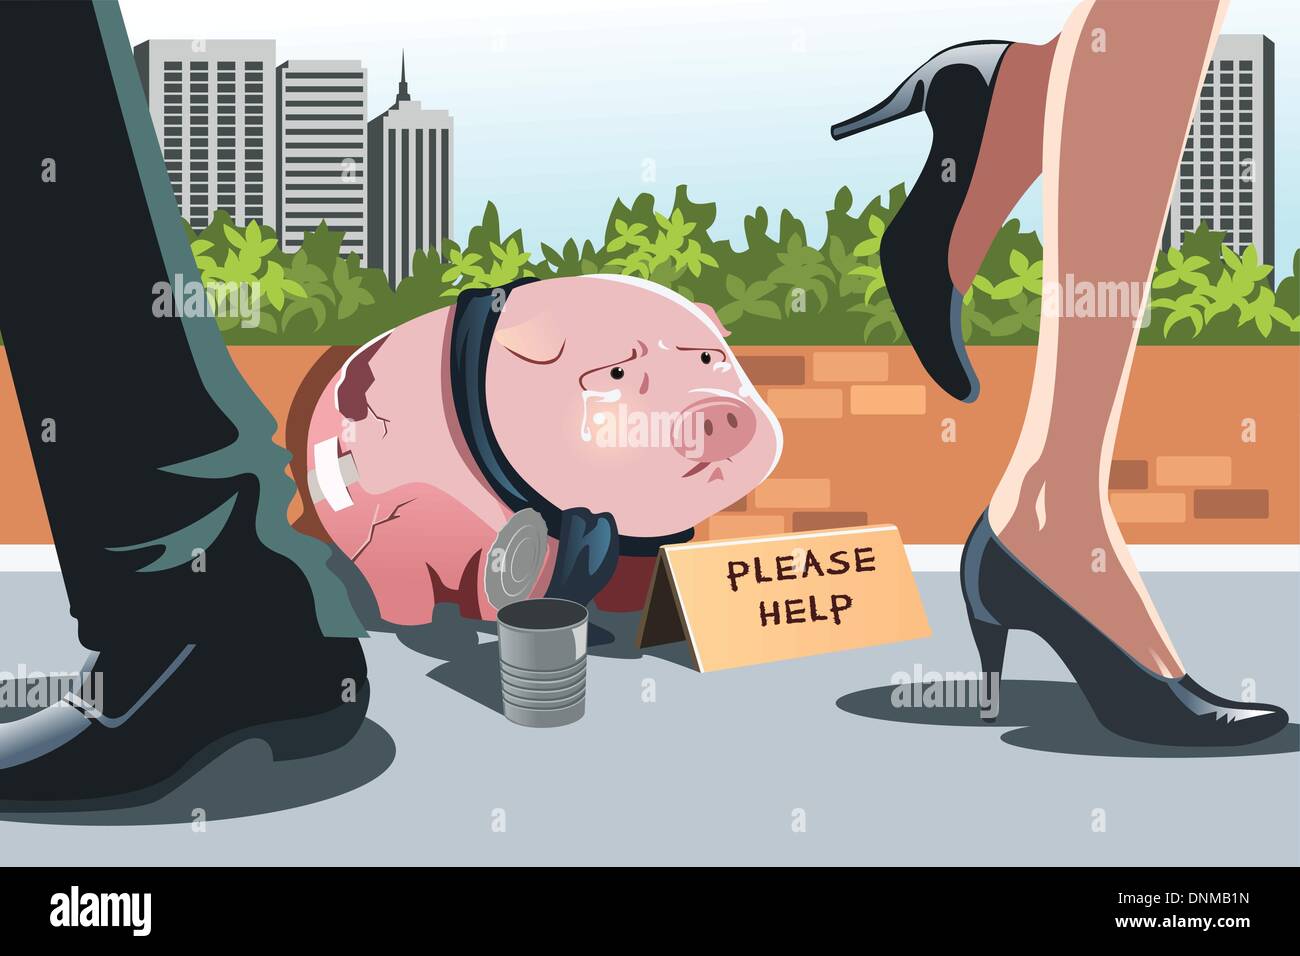 Una illustrazione vettoriale di un salvadanaio panhandling sul marciapiede, può essere utilizzata per rappresentare il concetto di crisi finanziaria o rec Illustrazione Vettoriale